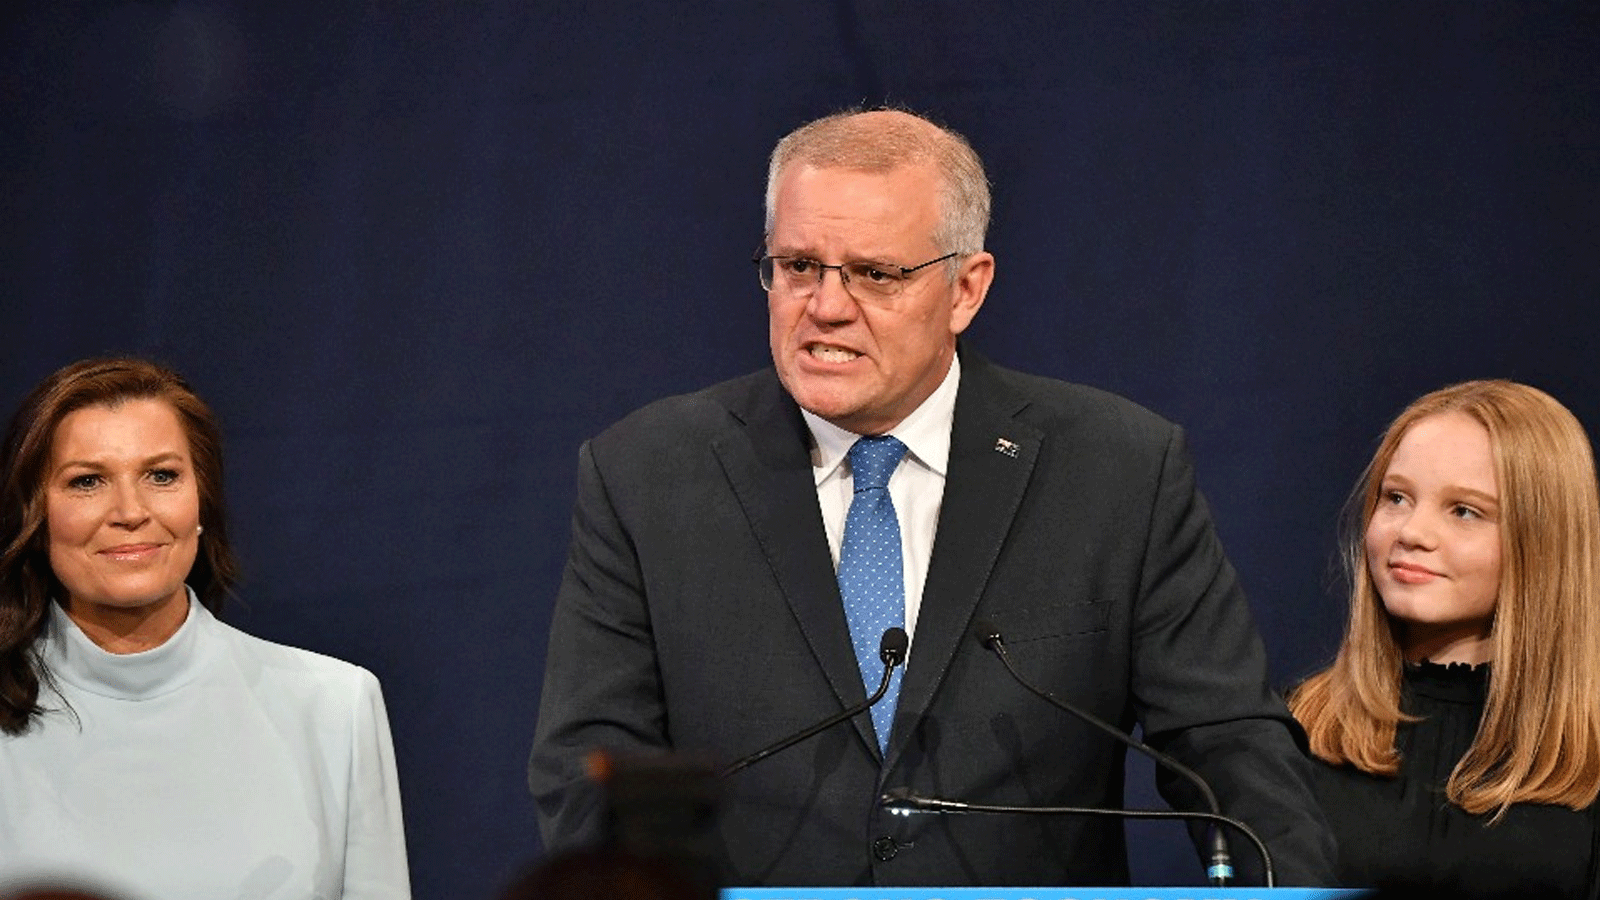 رئيس الوزراء الأسترالي المحافظ سكوت موريسون يعترف بهزيمته في الانتخابات يوم بعد ساعات من إصدار الناخبين توبيخًا لاذعًا لتقاعس حزبه بشأن تغير المناخ. 21 أيار\ مايو 2022